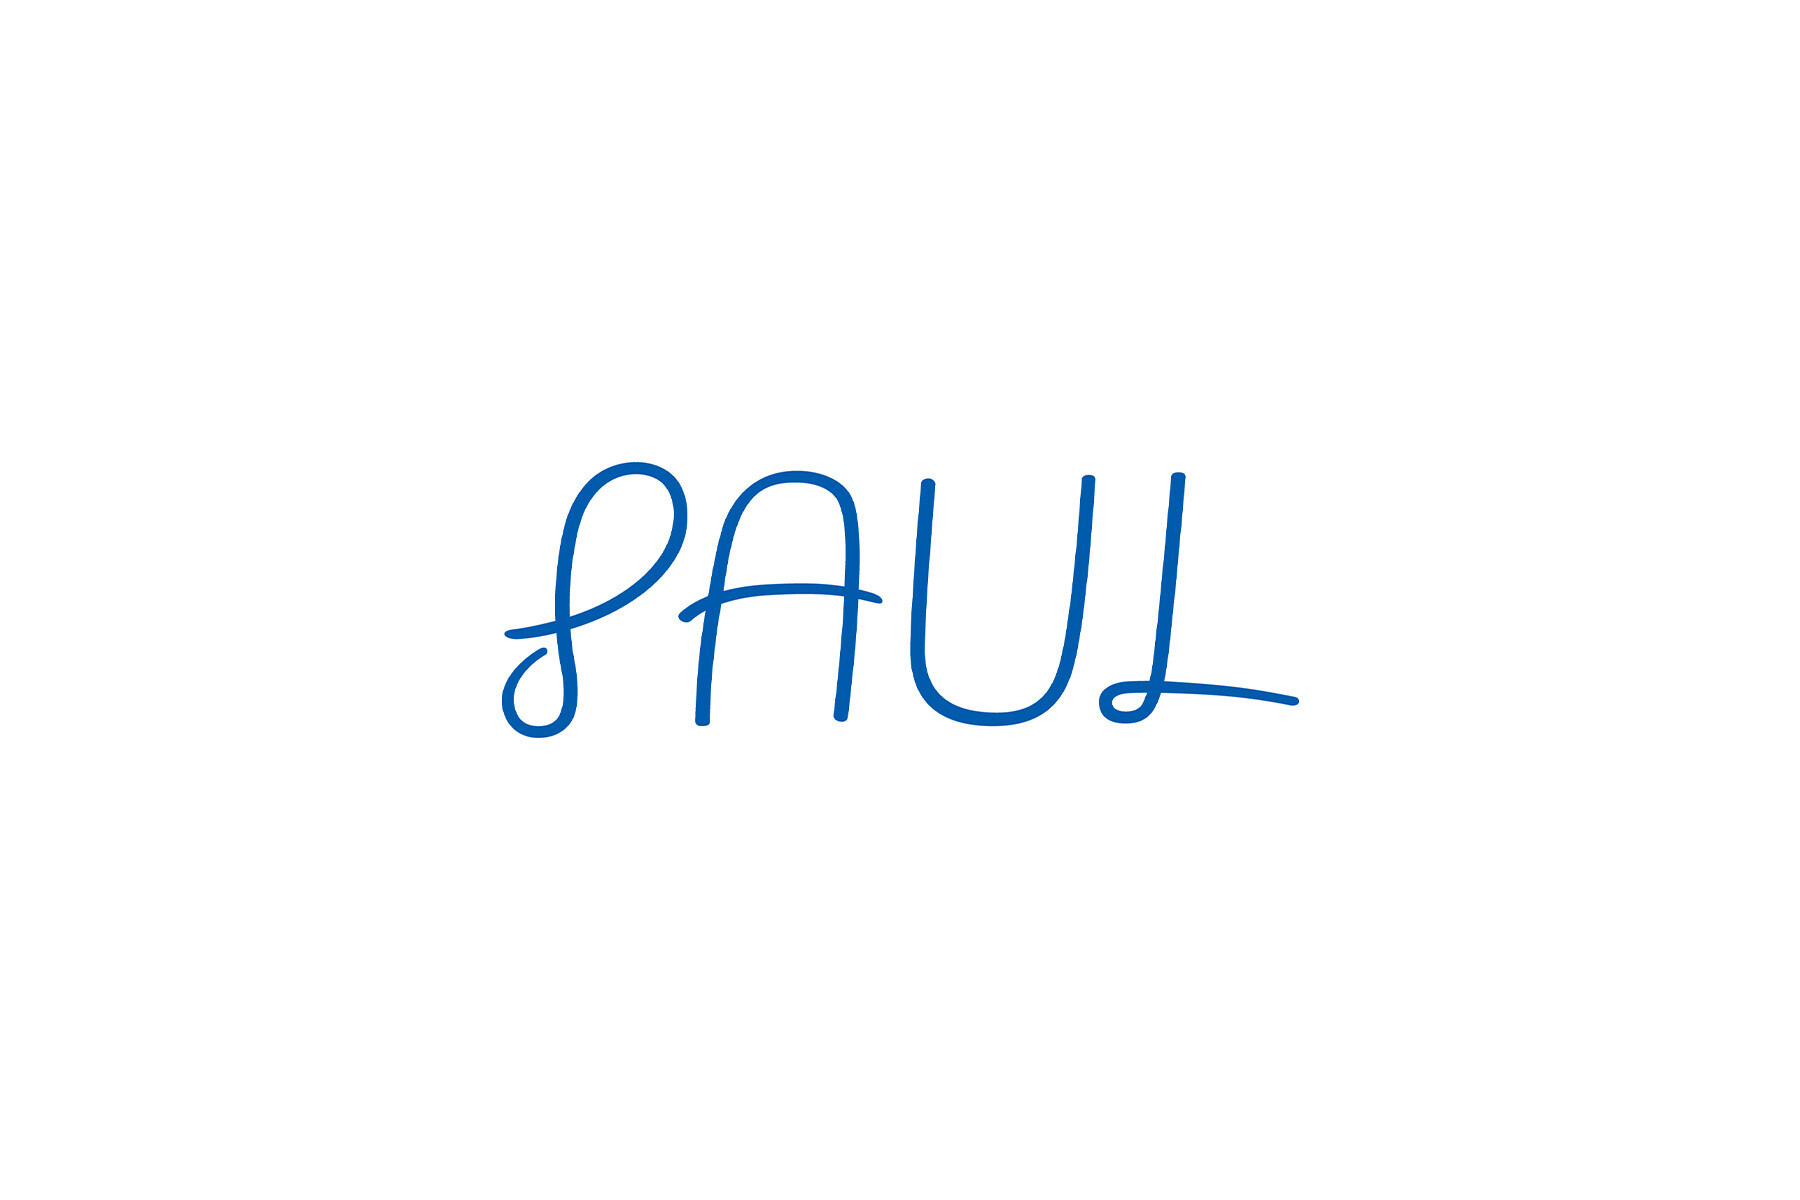 PAUL's images7